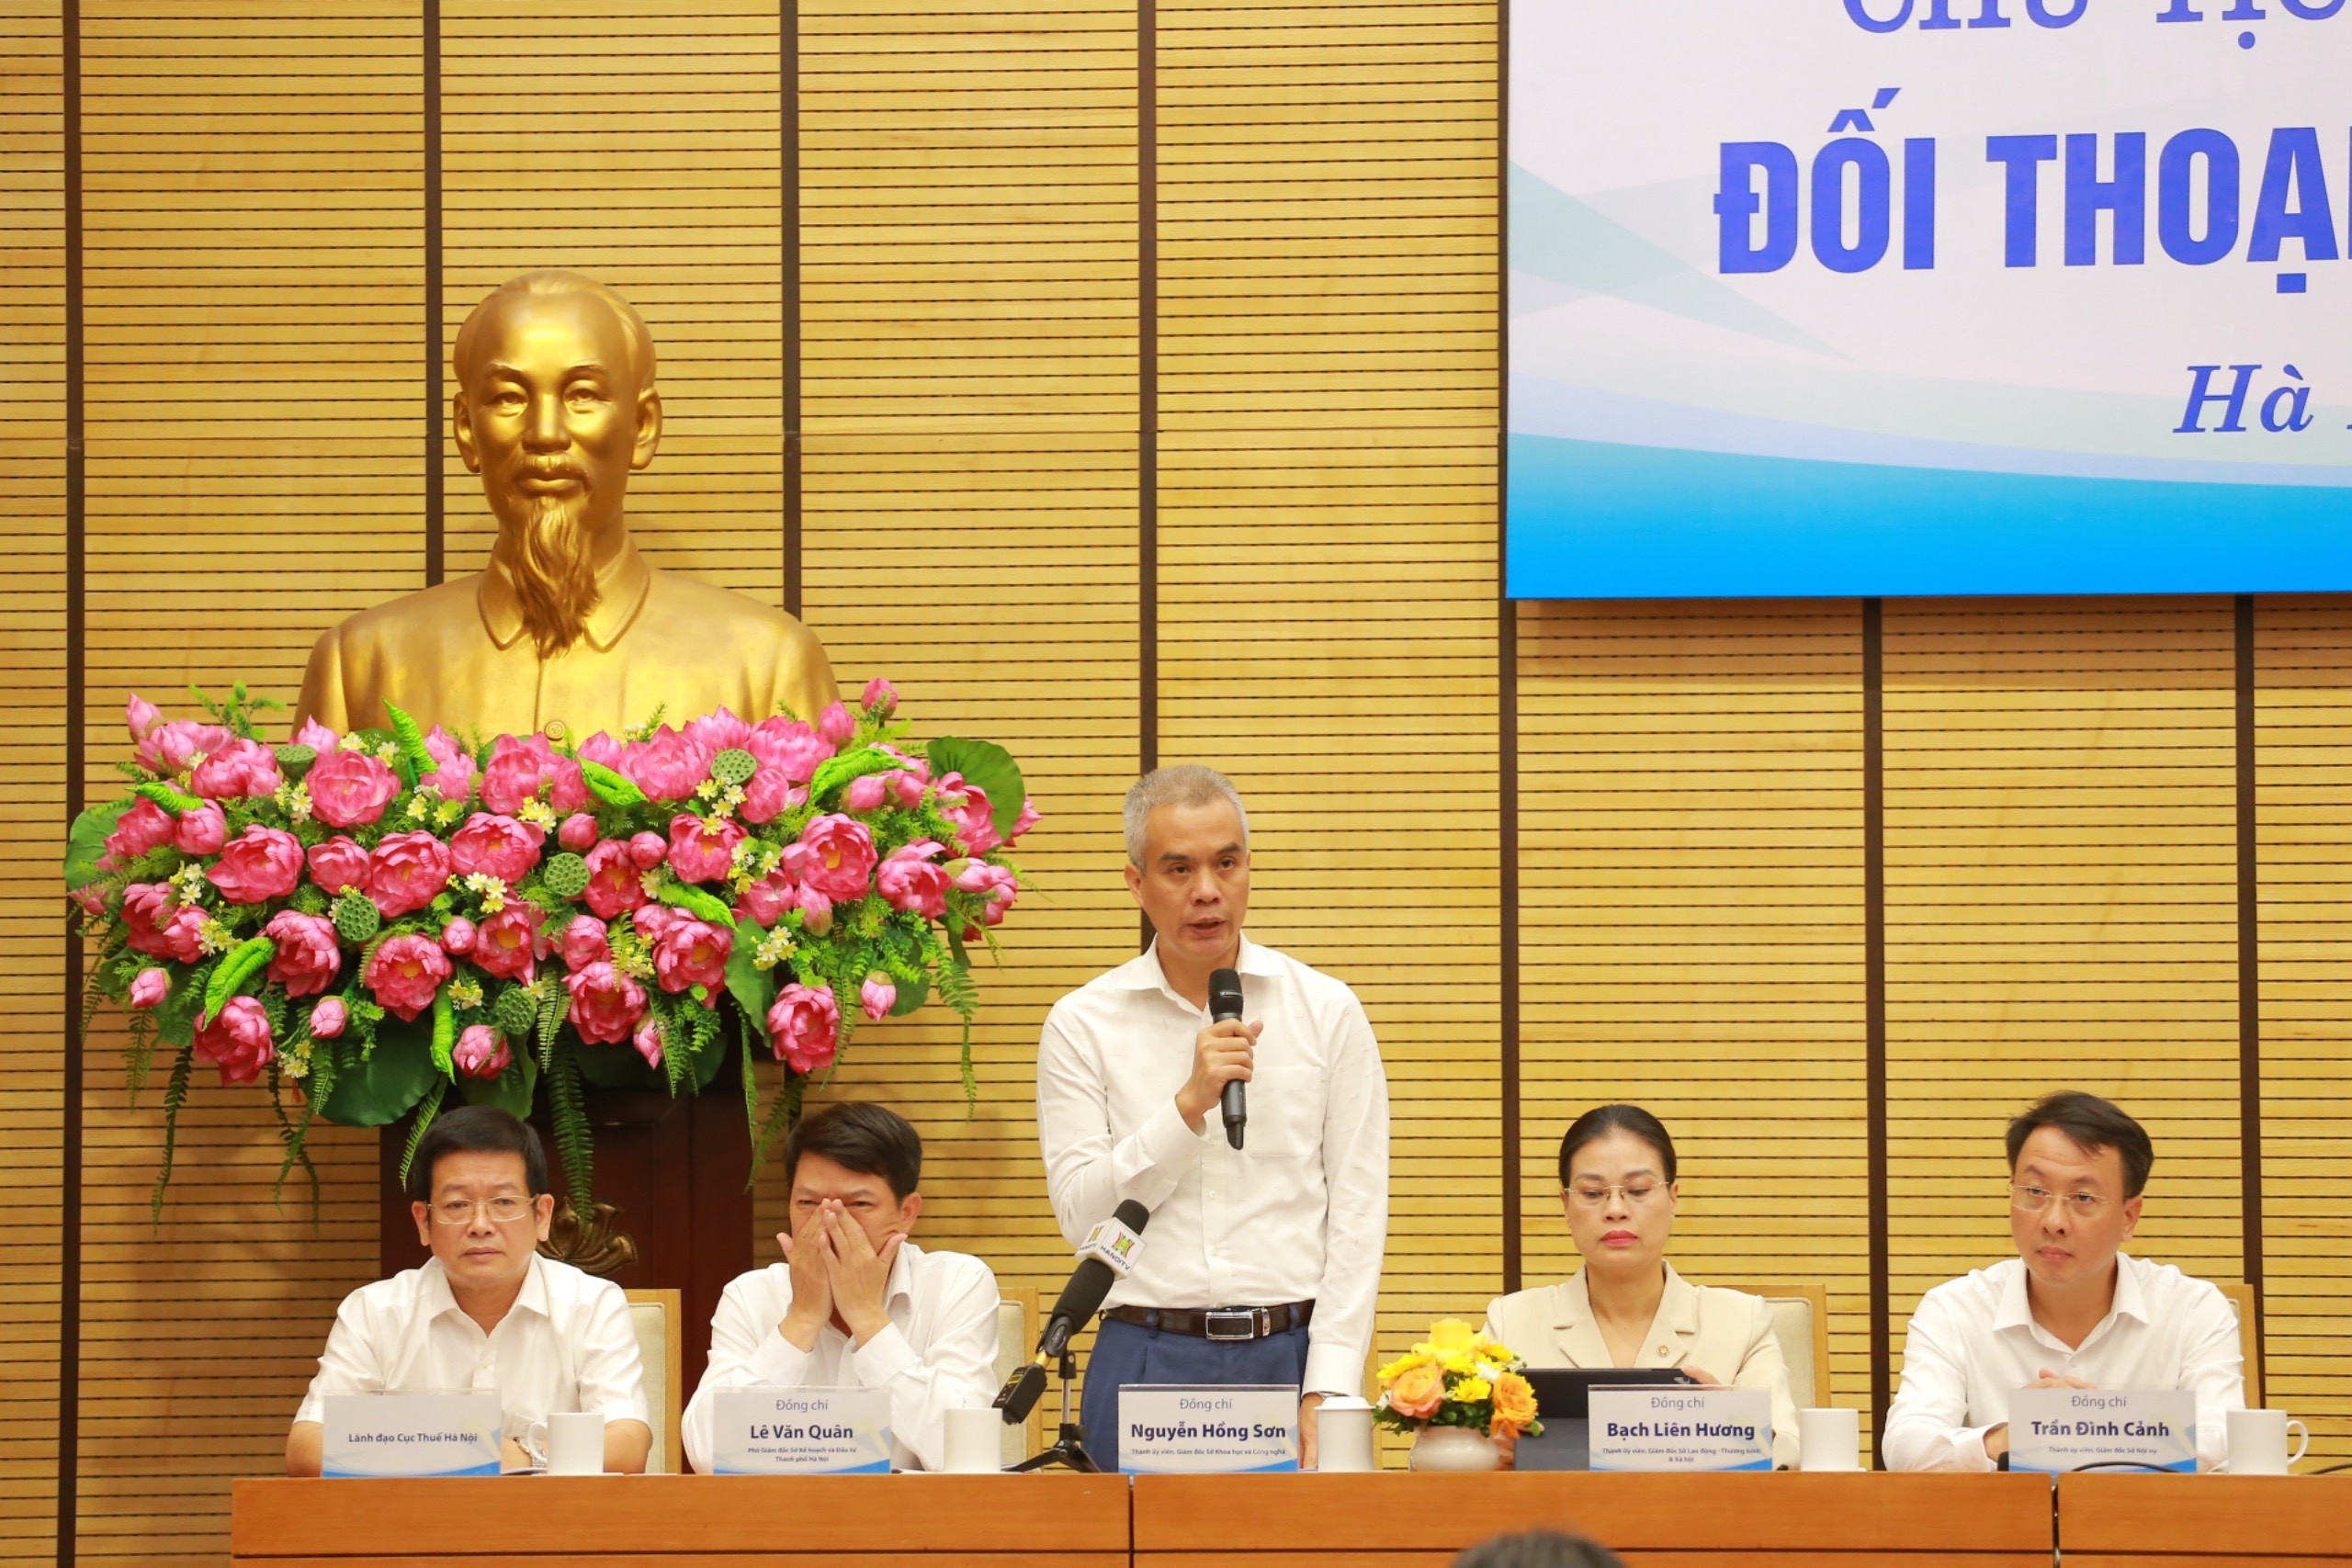 Đồng chí Nguyễn Hồng Sơn, Thành ủy viên - Giám đốc Sở Khoa học và Công nghệ